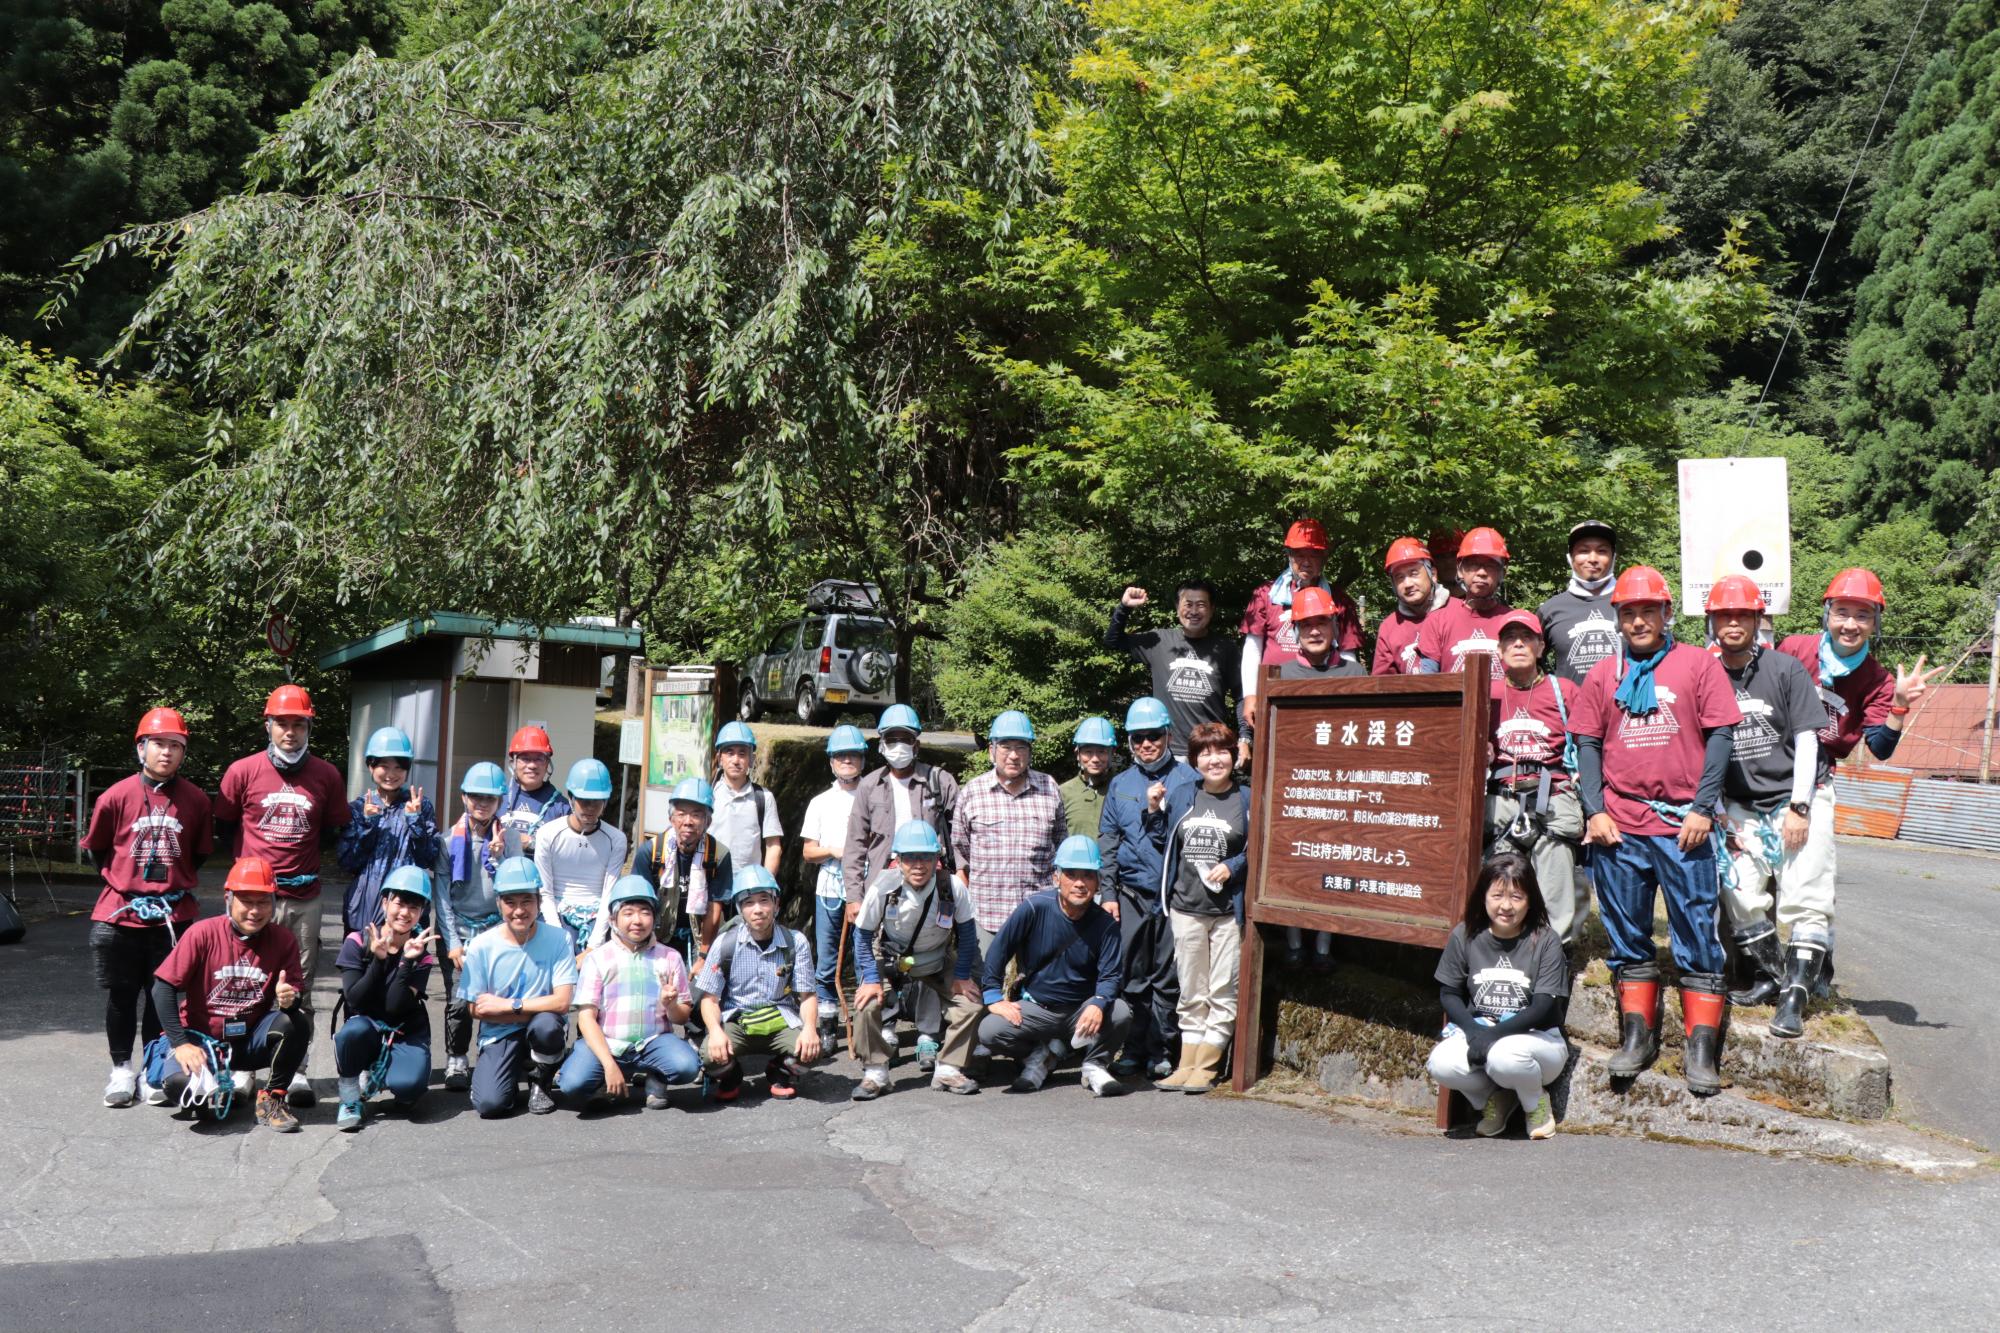 波賀林鉄再整備ツアーの参加者ら約30名が音水渓谷の入口に立つ看板付近に集まって並んでいる写真